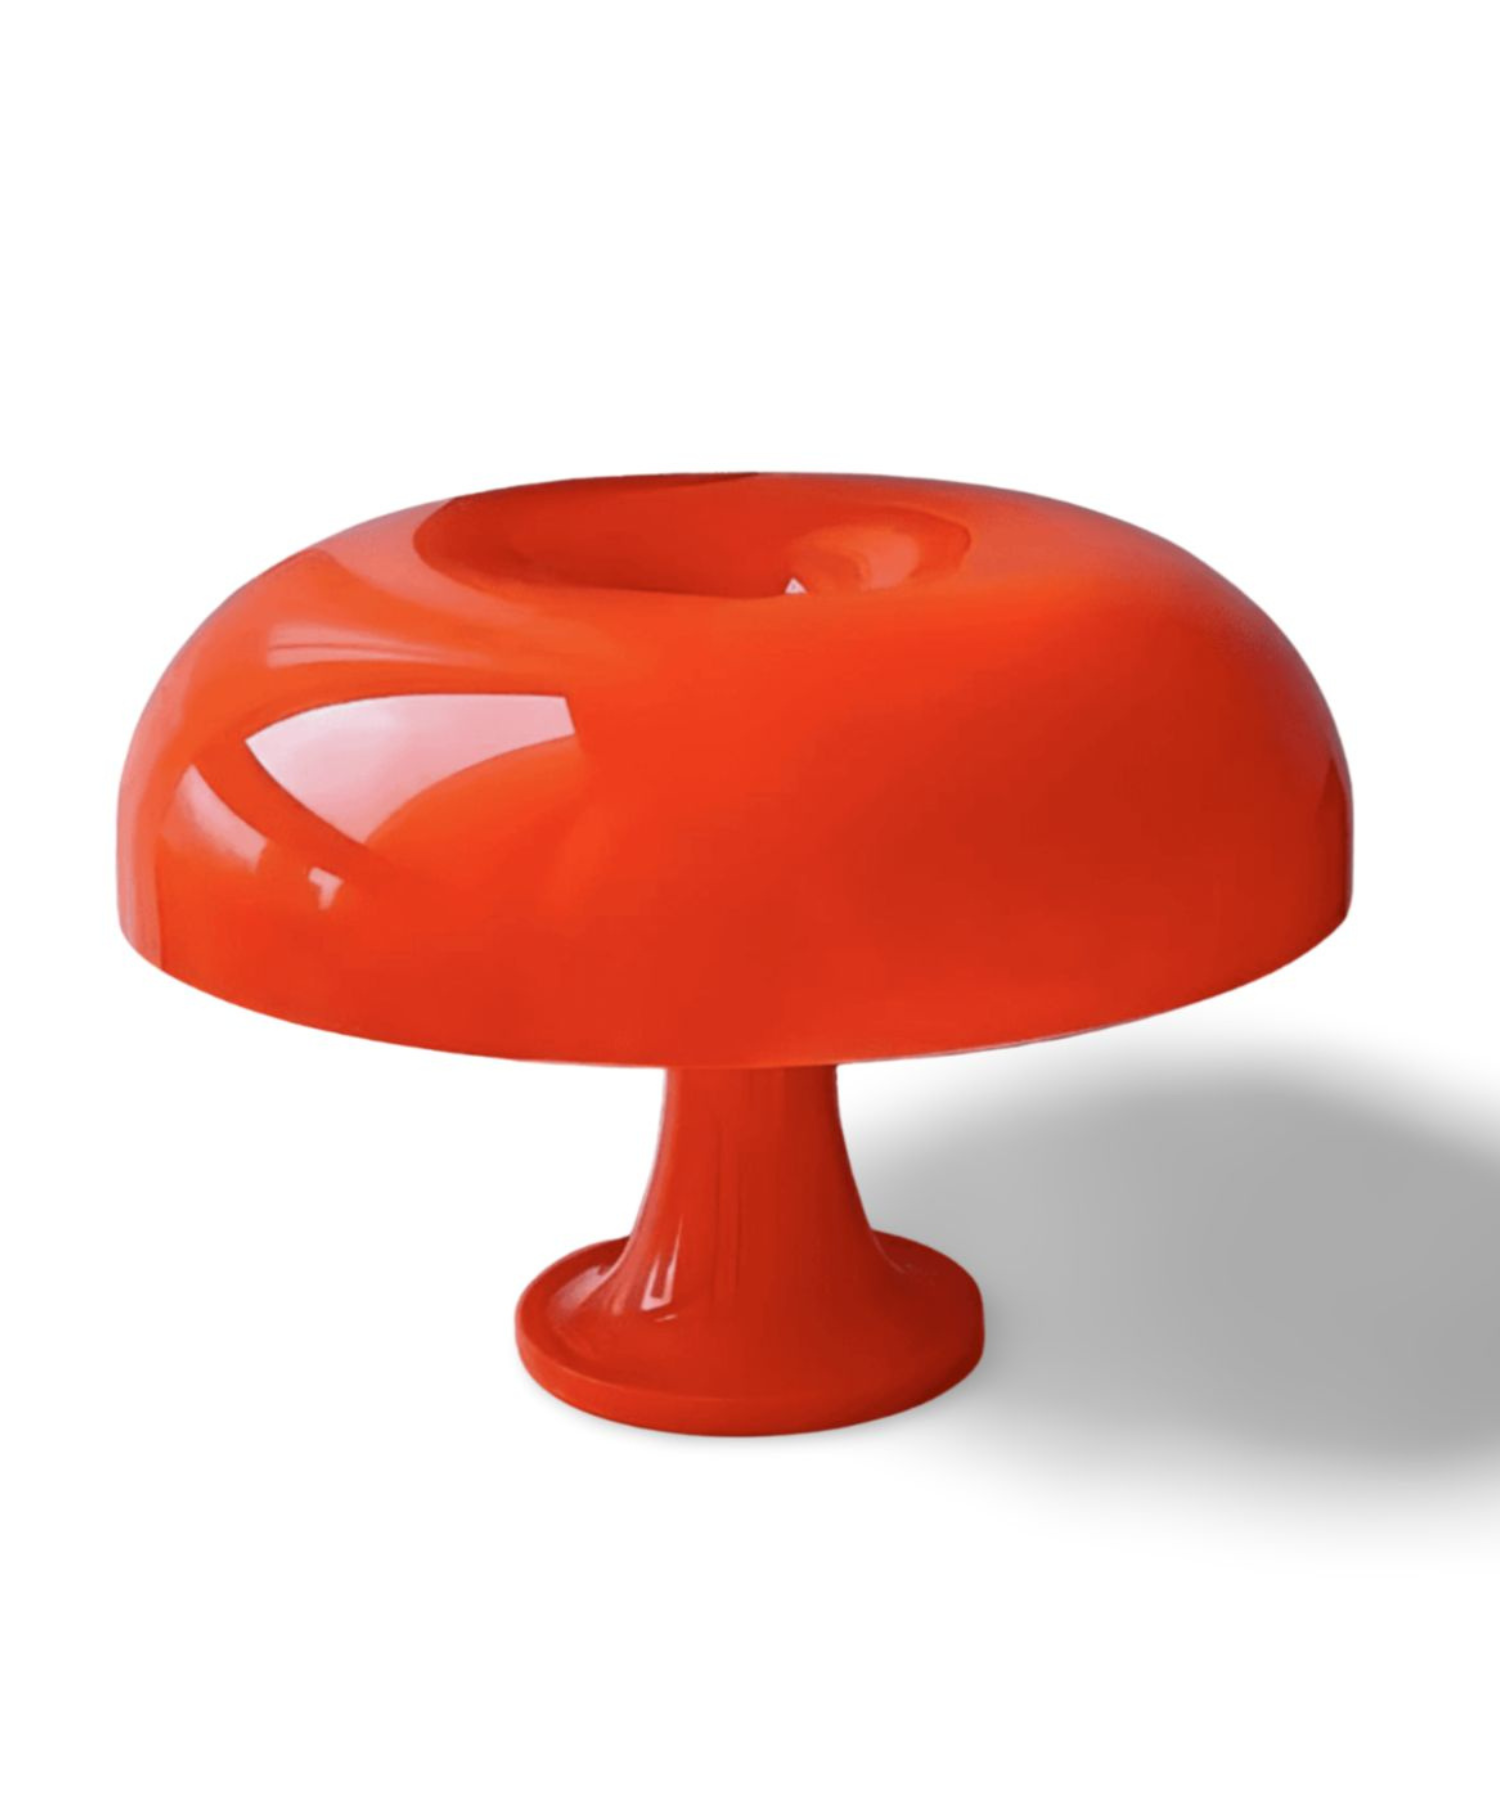 Orange mushroom retro lamp